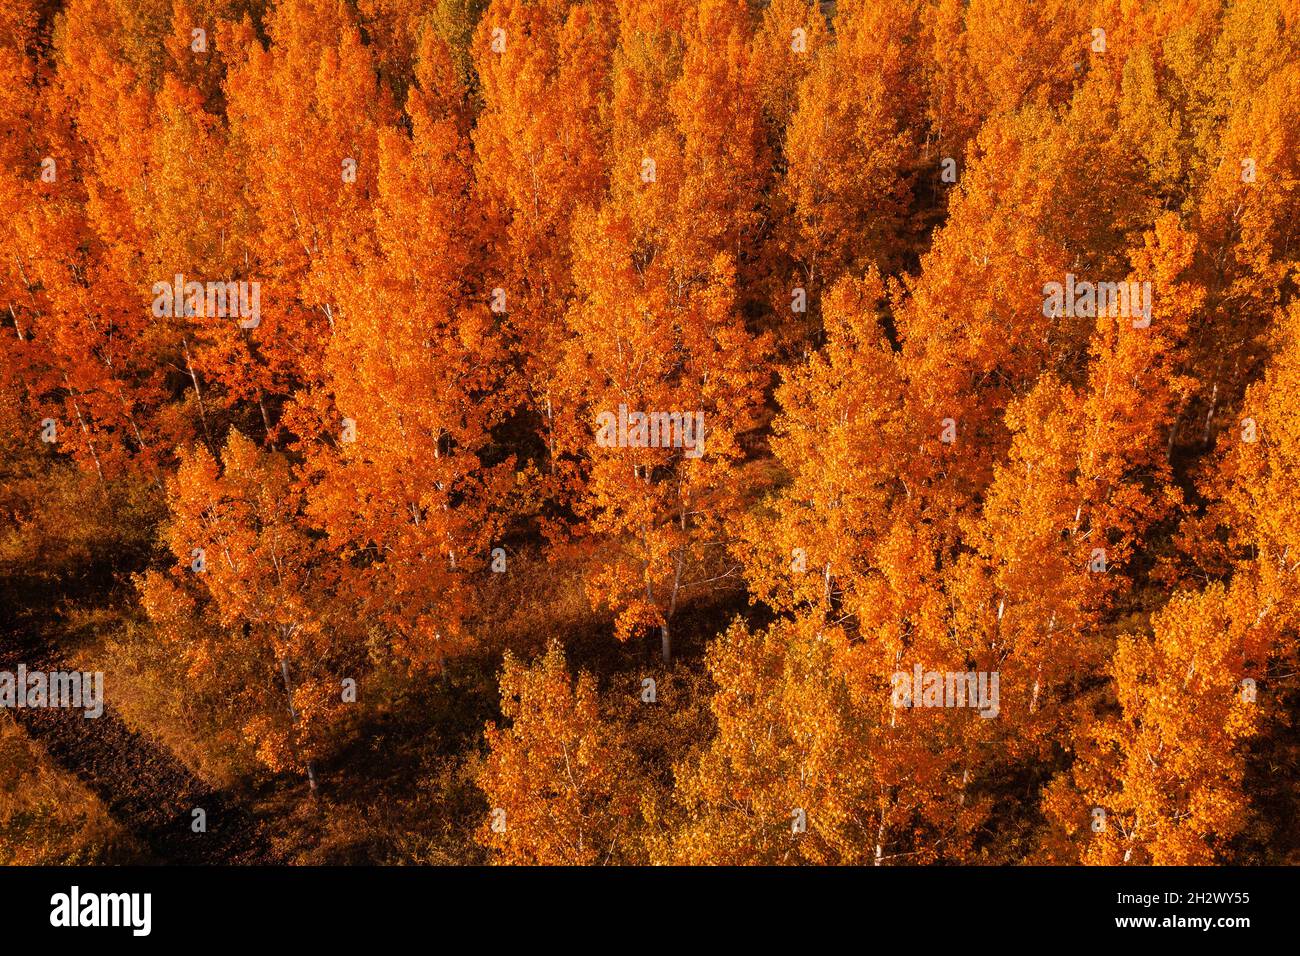 Saison d'automne dans la forêt à feuilles caduques.Prise de vue aérienne des arbres orange en automne après-midi depuis le drone pov. Banque D'Images